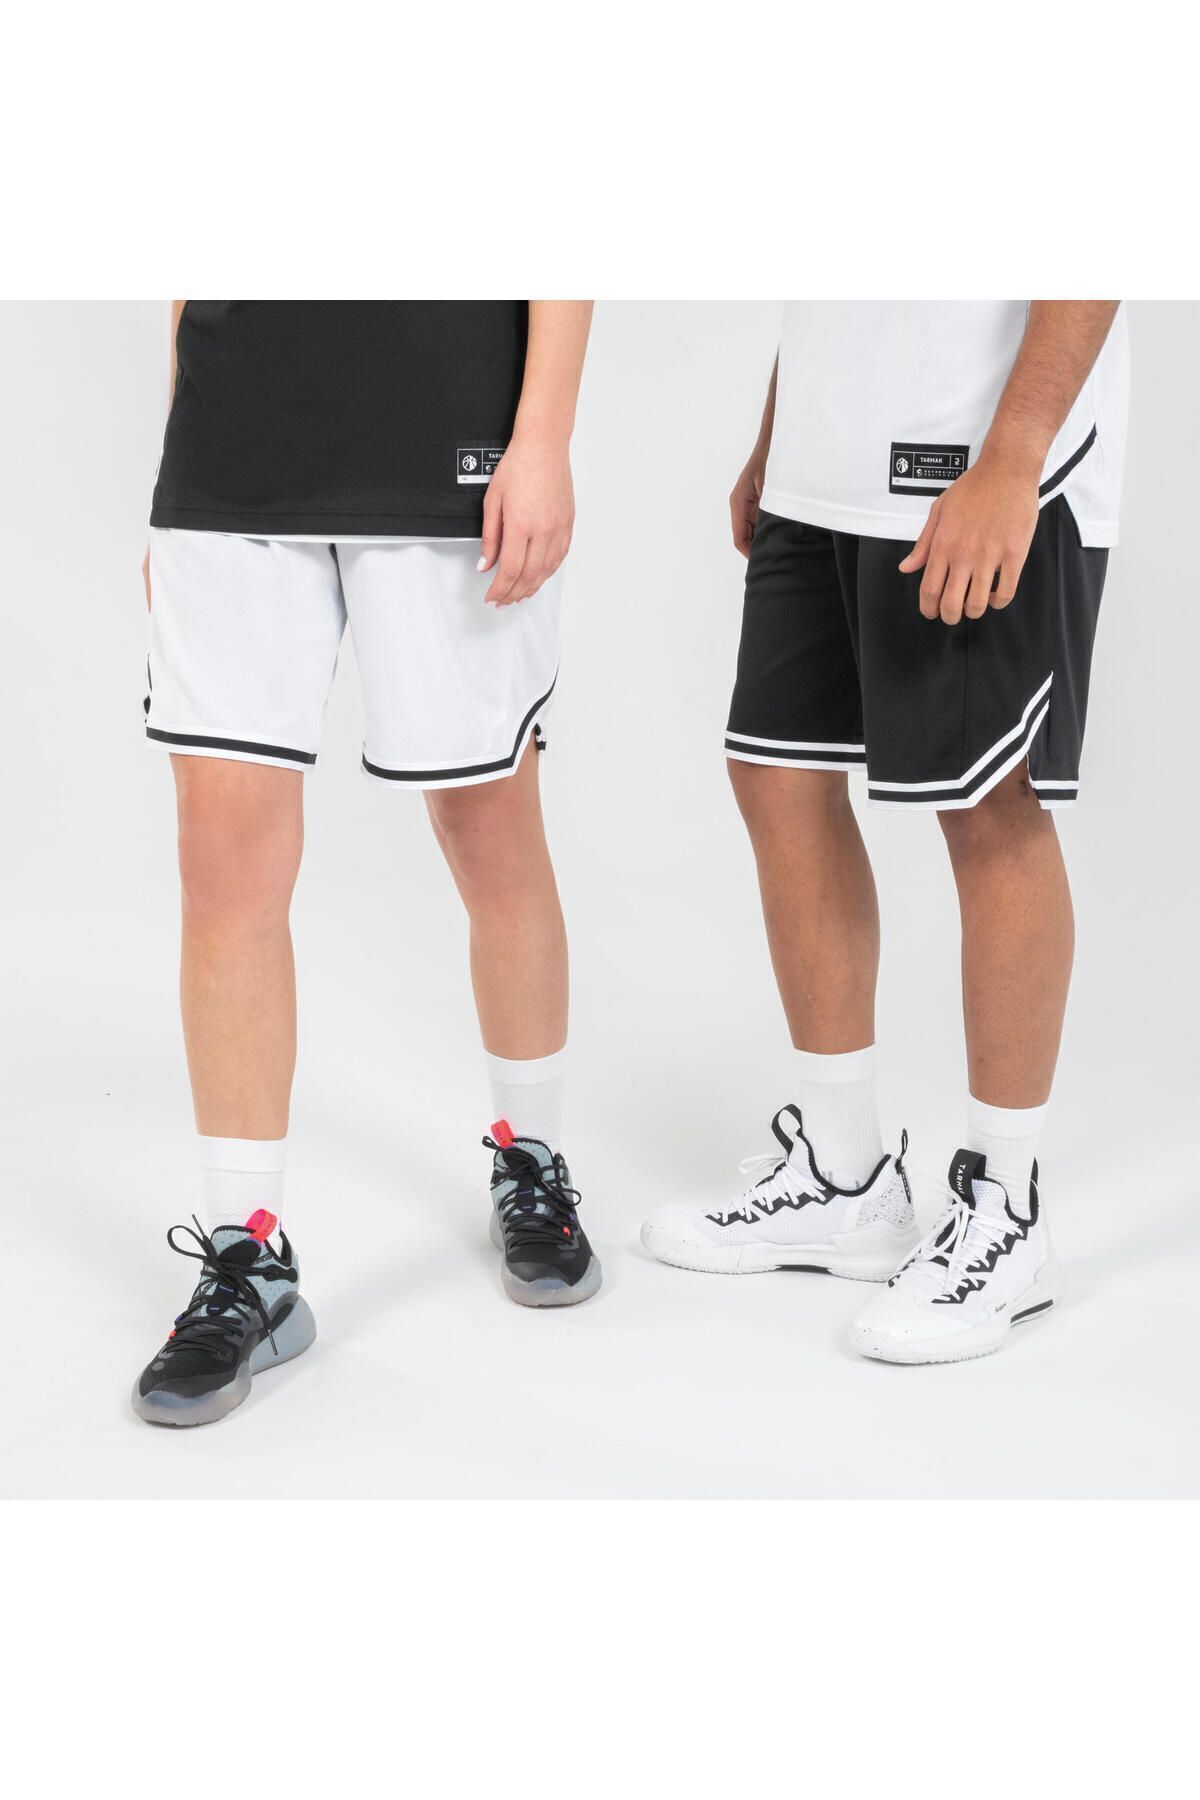 Decathlon Yetişkin Çift Taraflı Basketbol Şortu - Siyah / Beyaz - SH500R